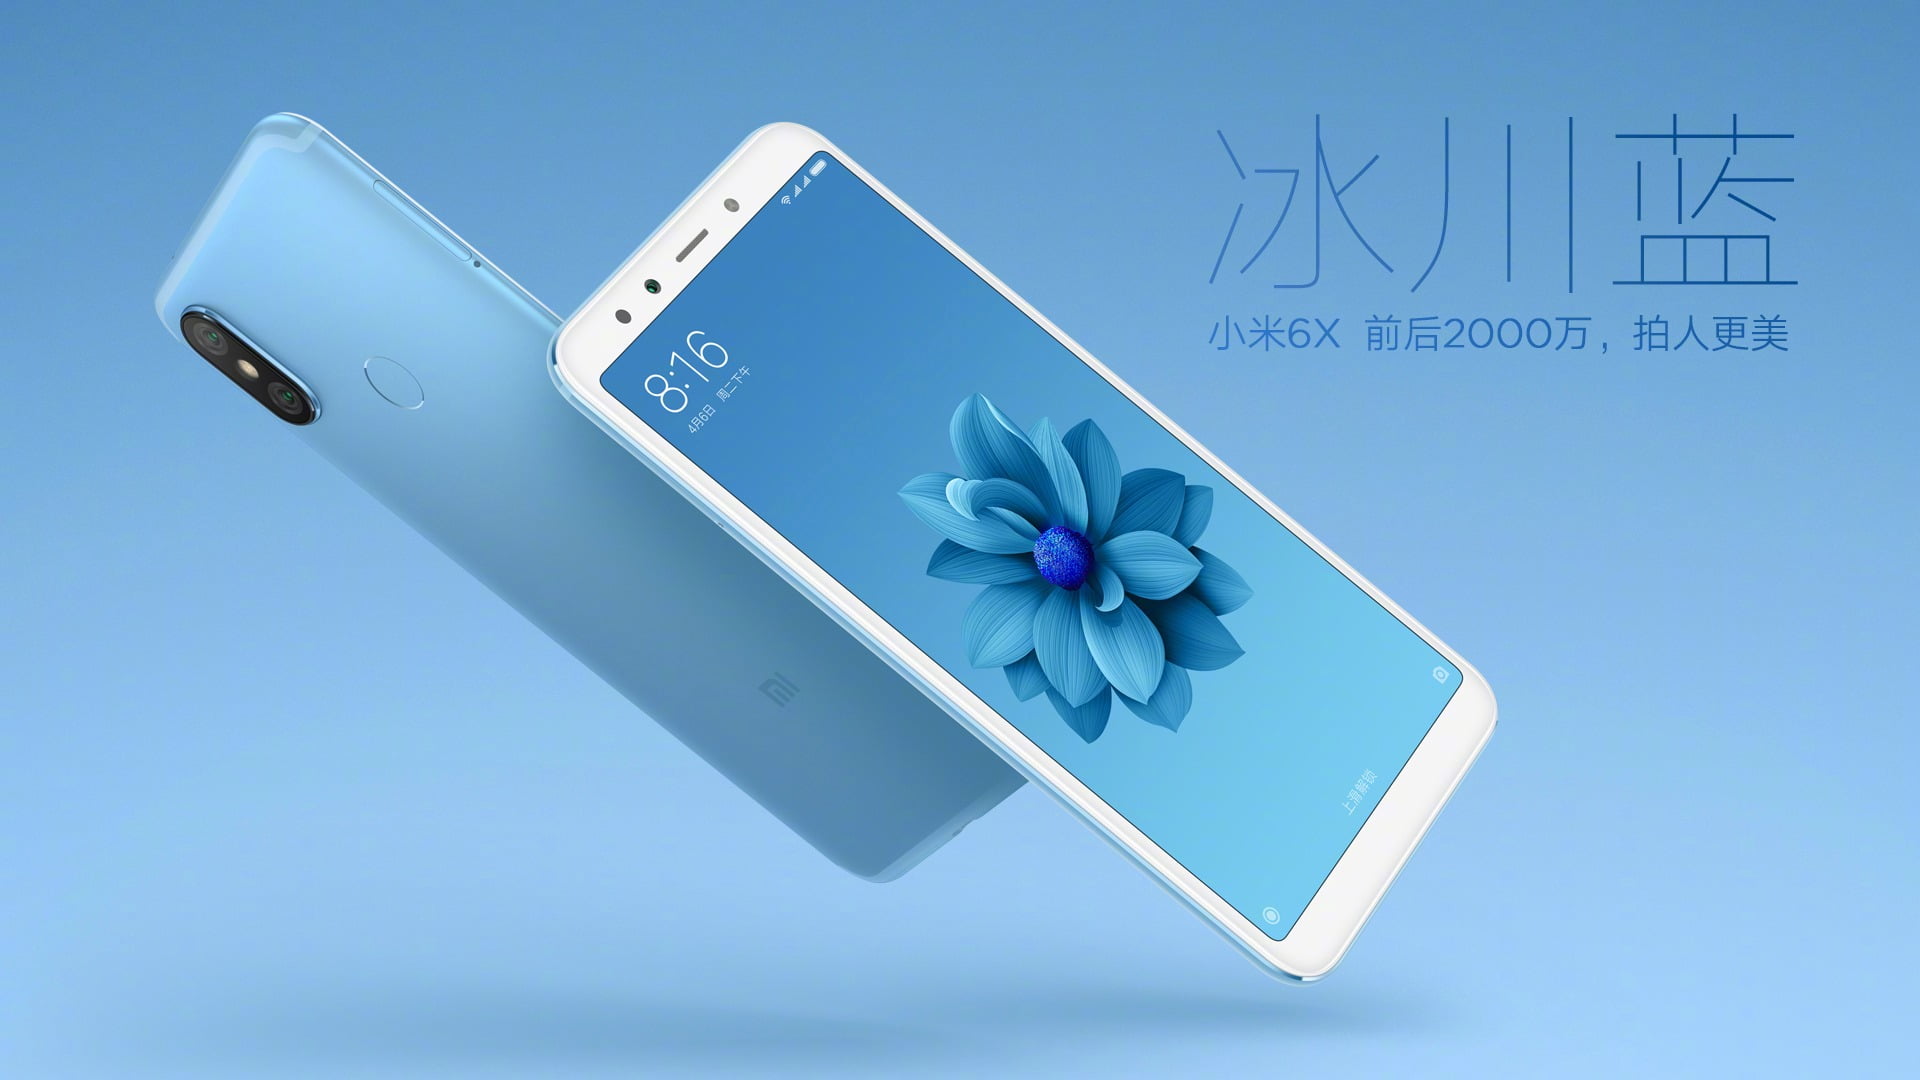 Xiaomi Mi 6X - Ice Blue